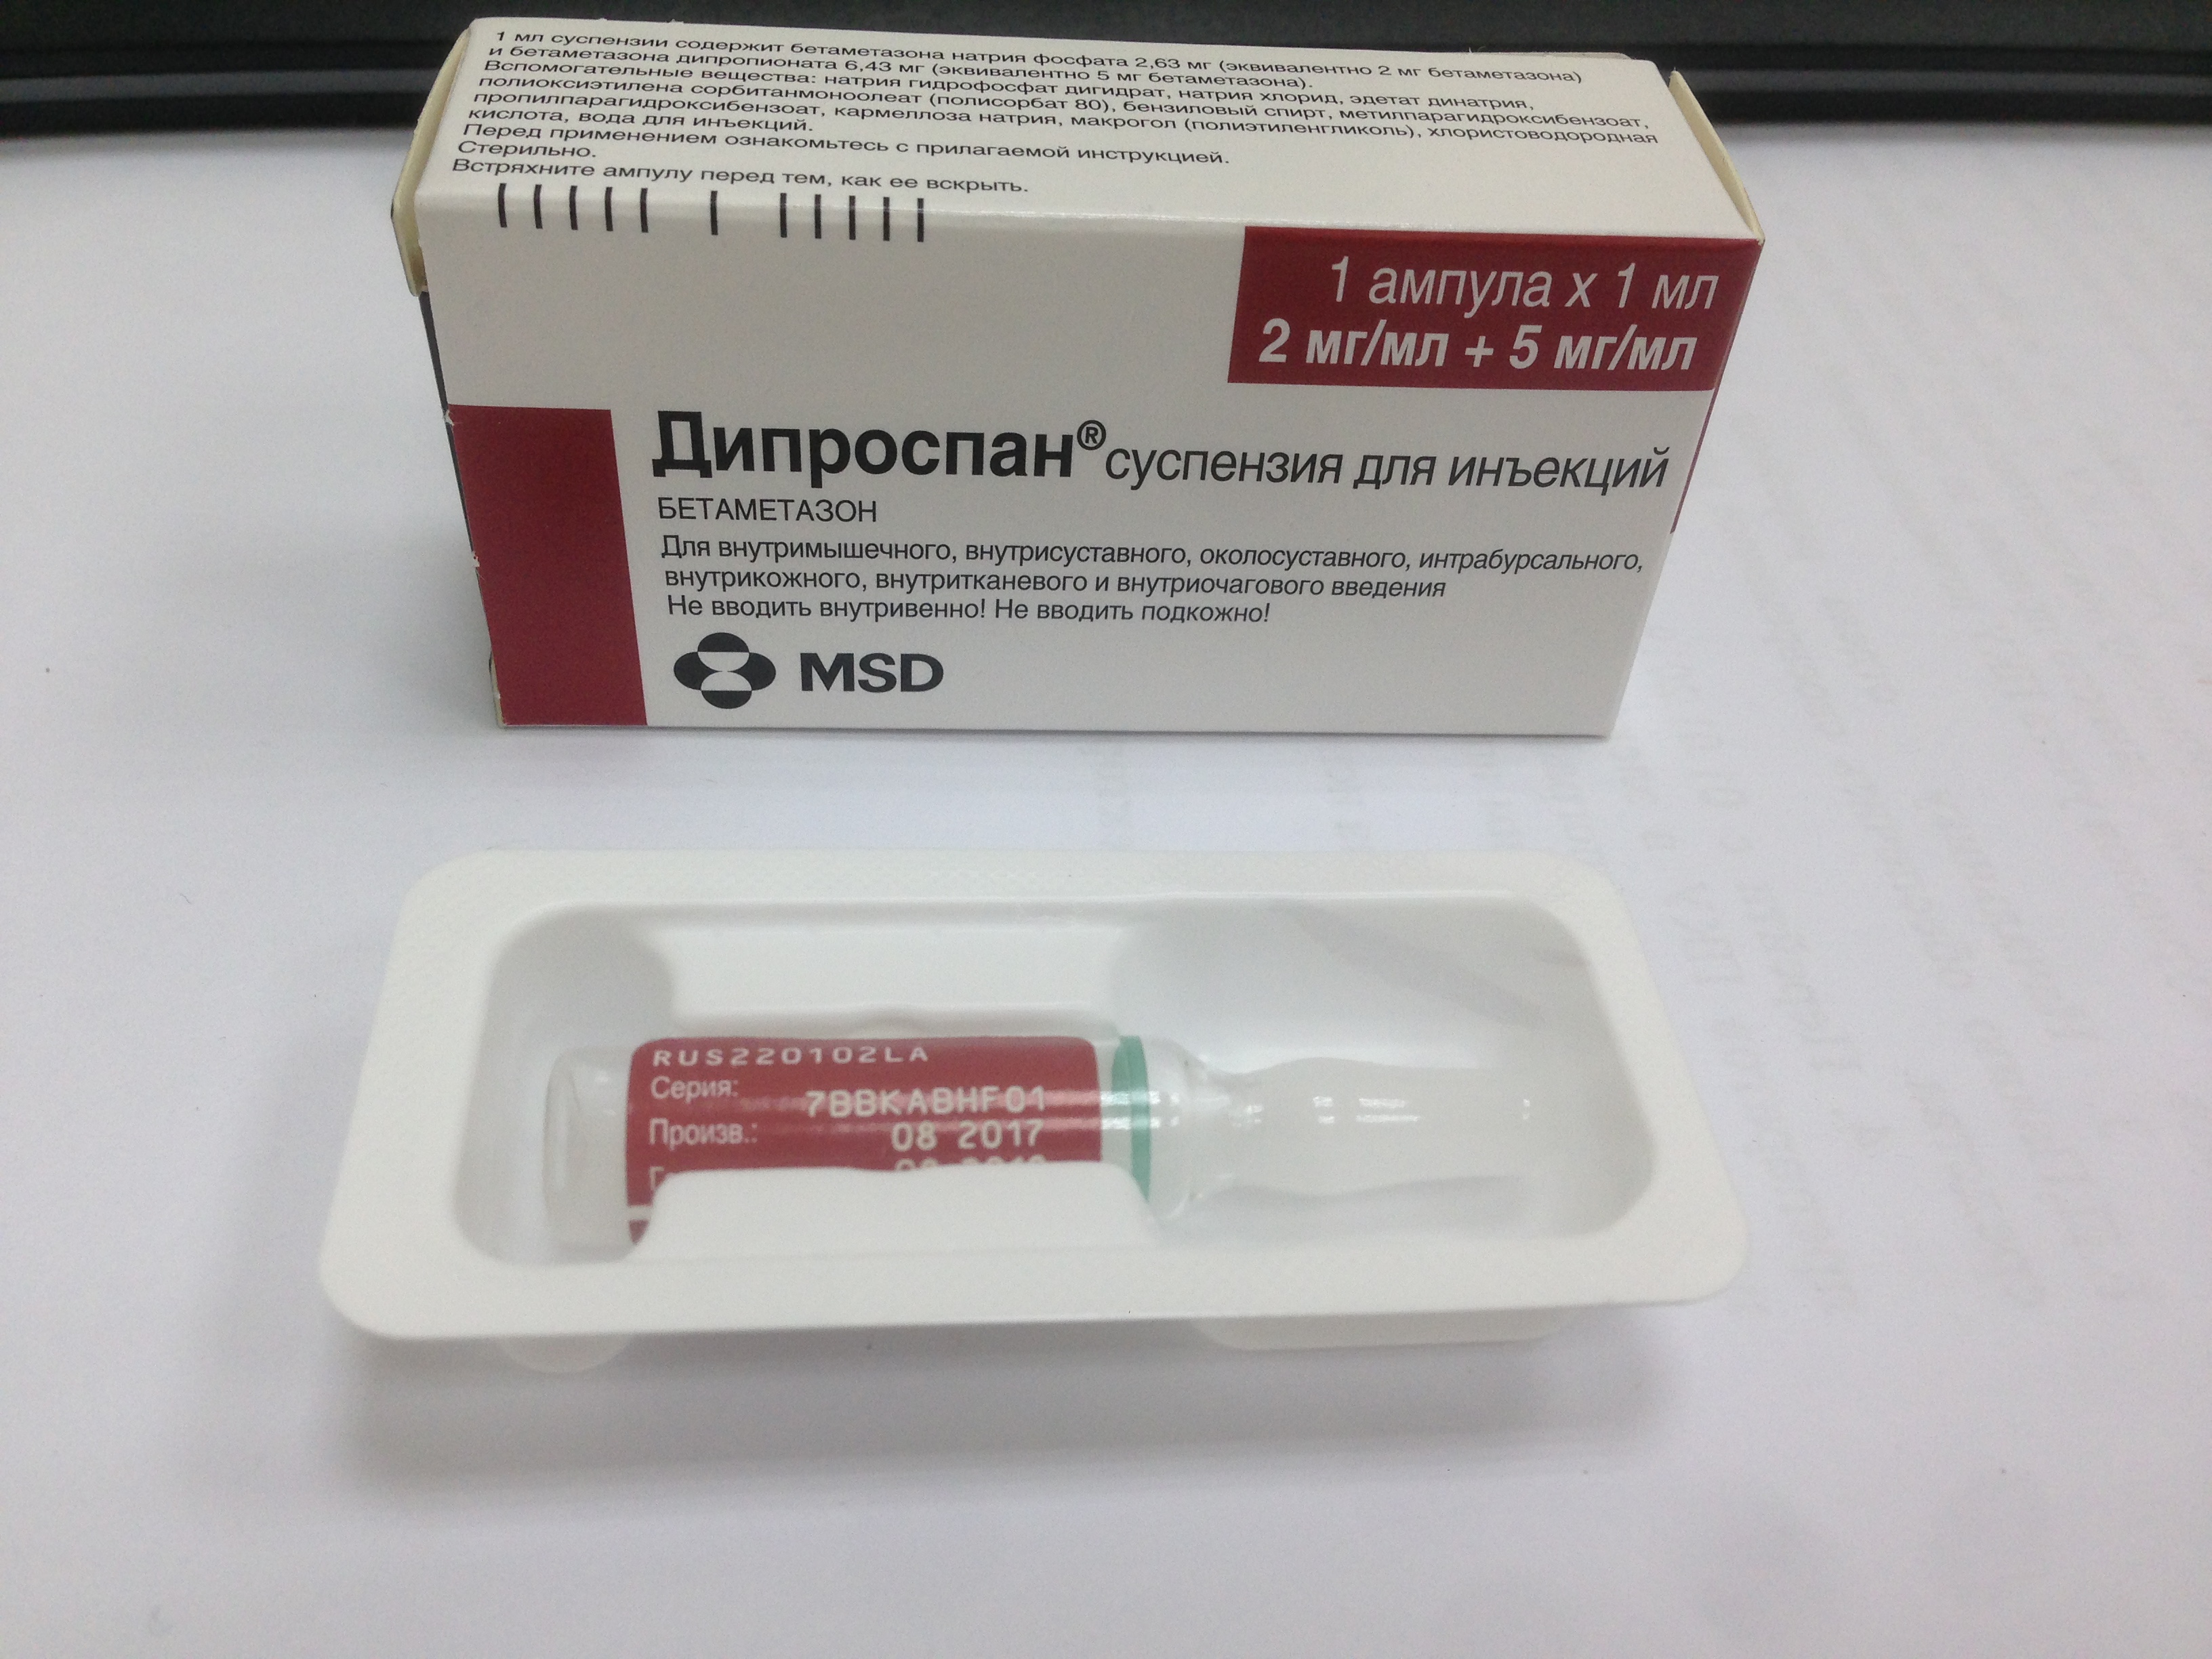 Гормональное лекарство против псориаза Дипроспан